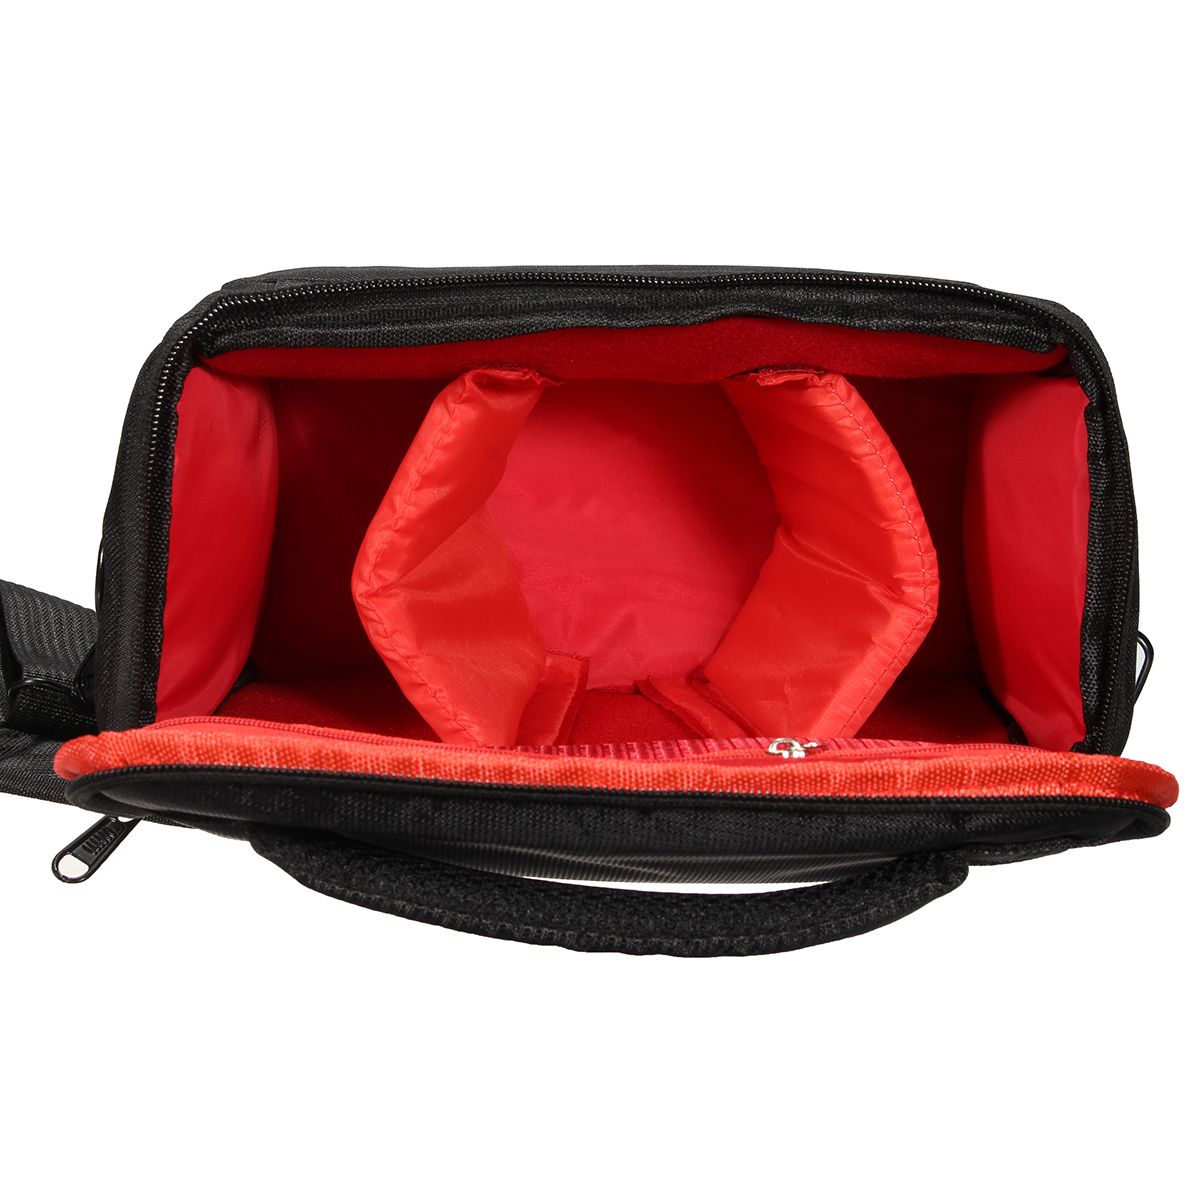 Travel-Carry-Bag-Waterproof-Case-Shoulder-Strap-For-Nikon-For-Canon-DSLR-Digital-Camera-1404056